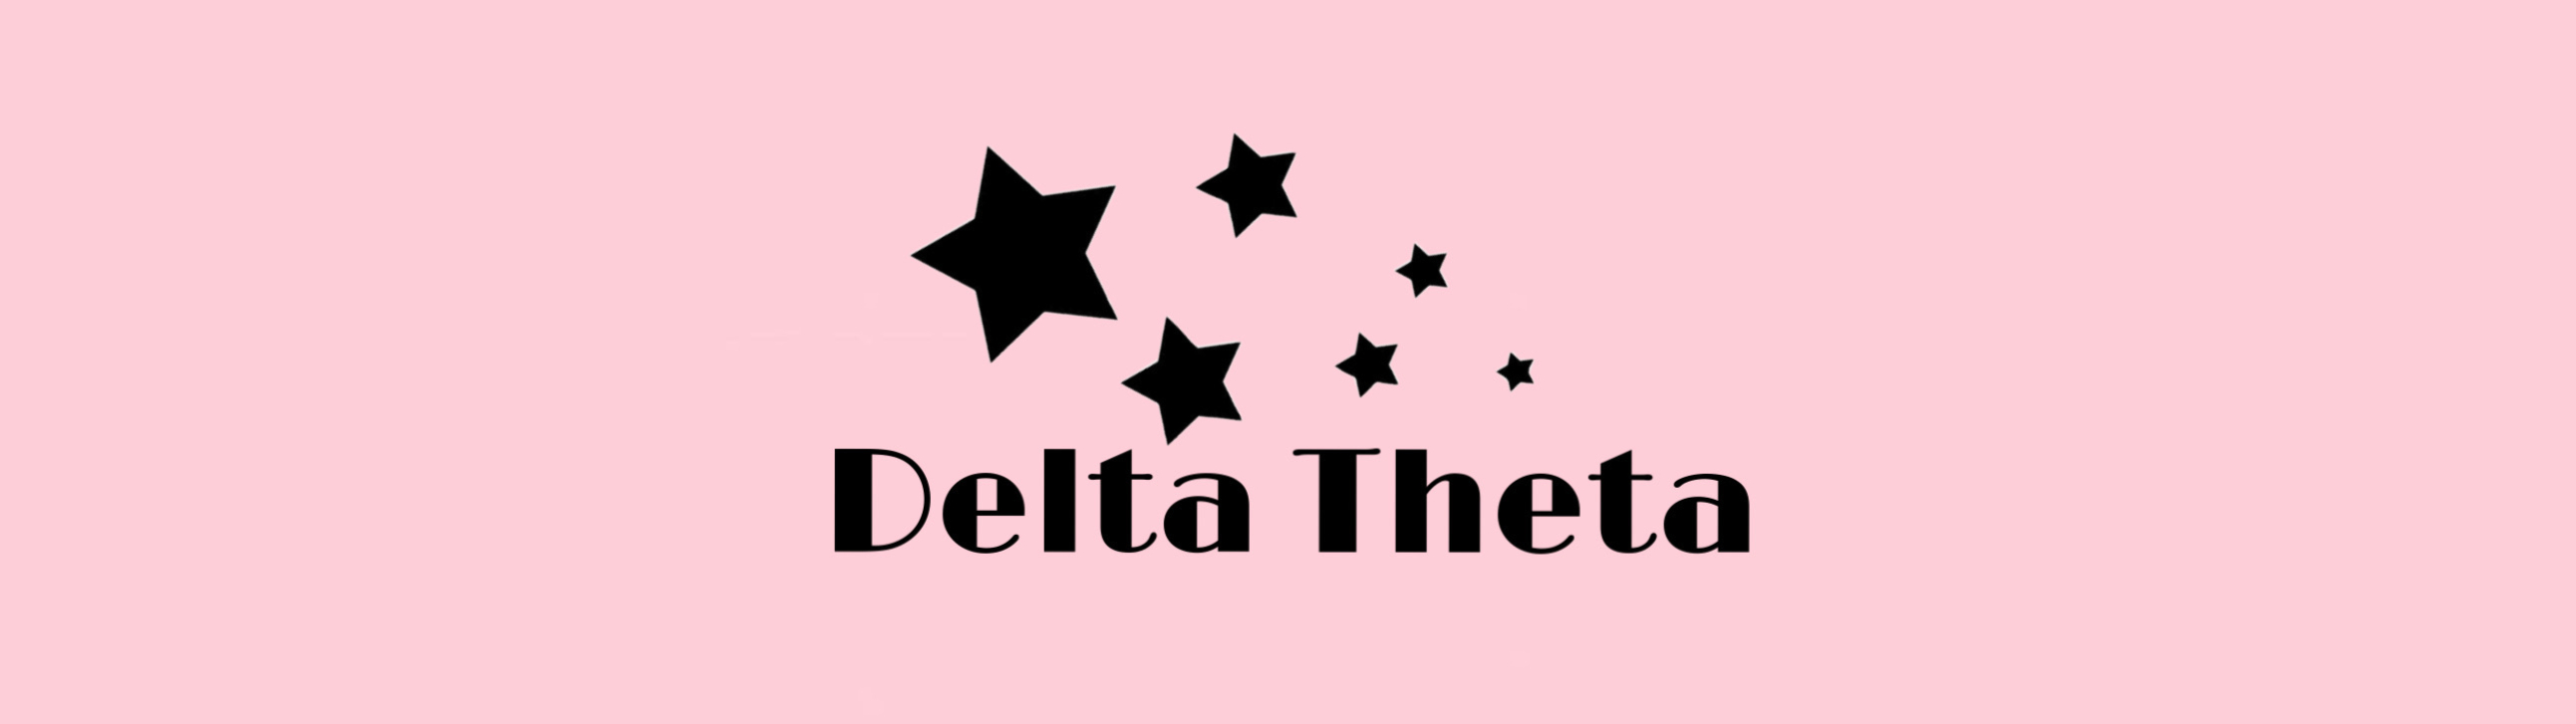 Delta Theta